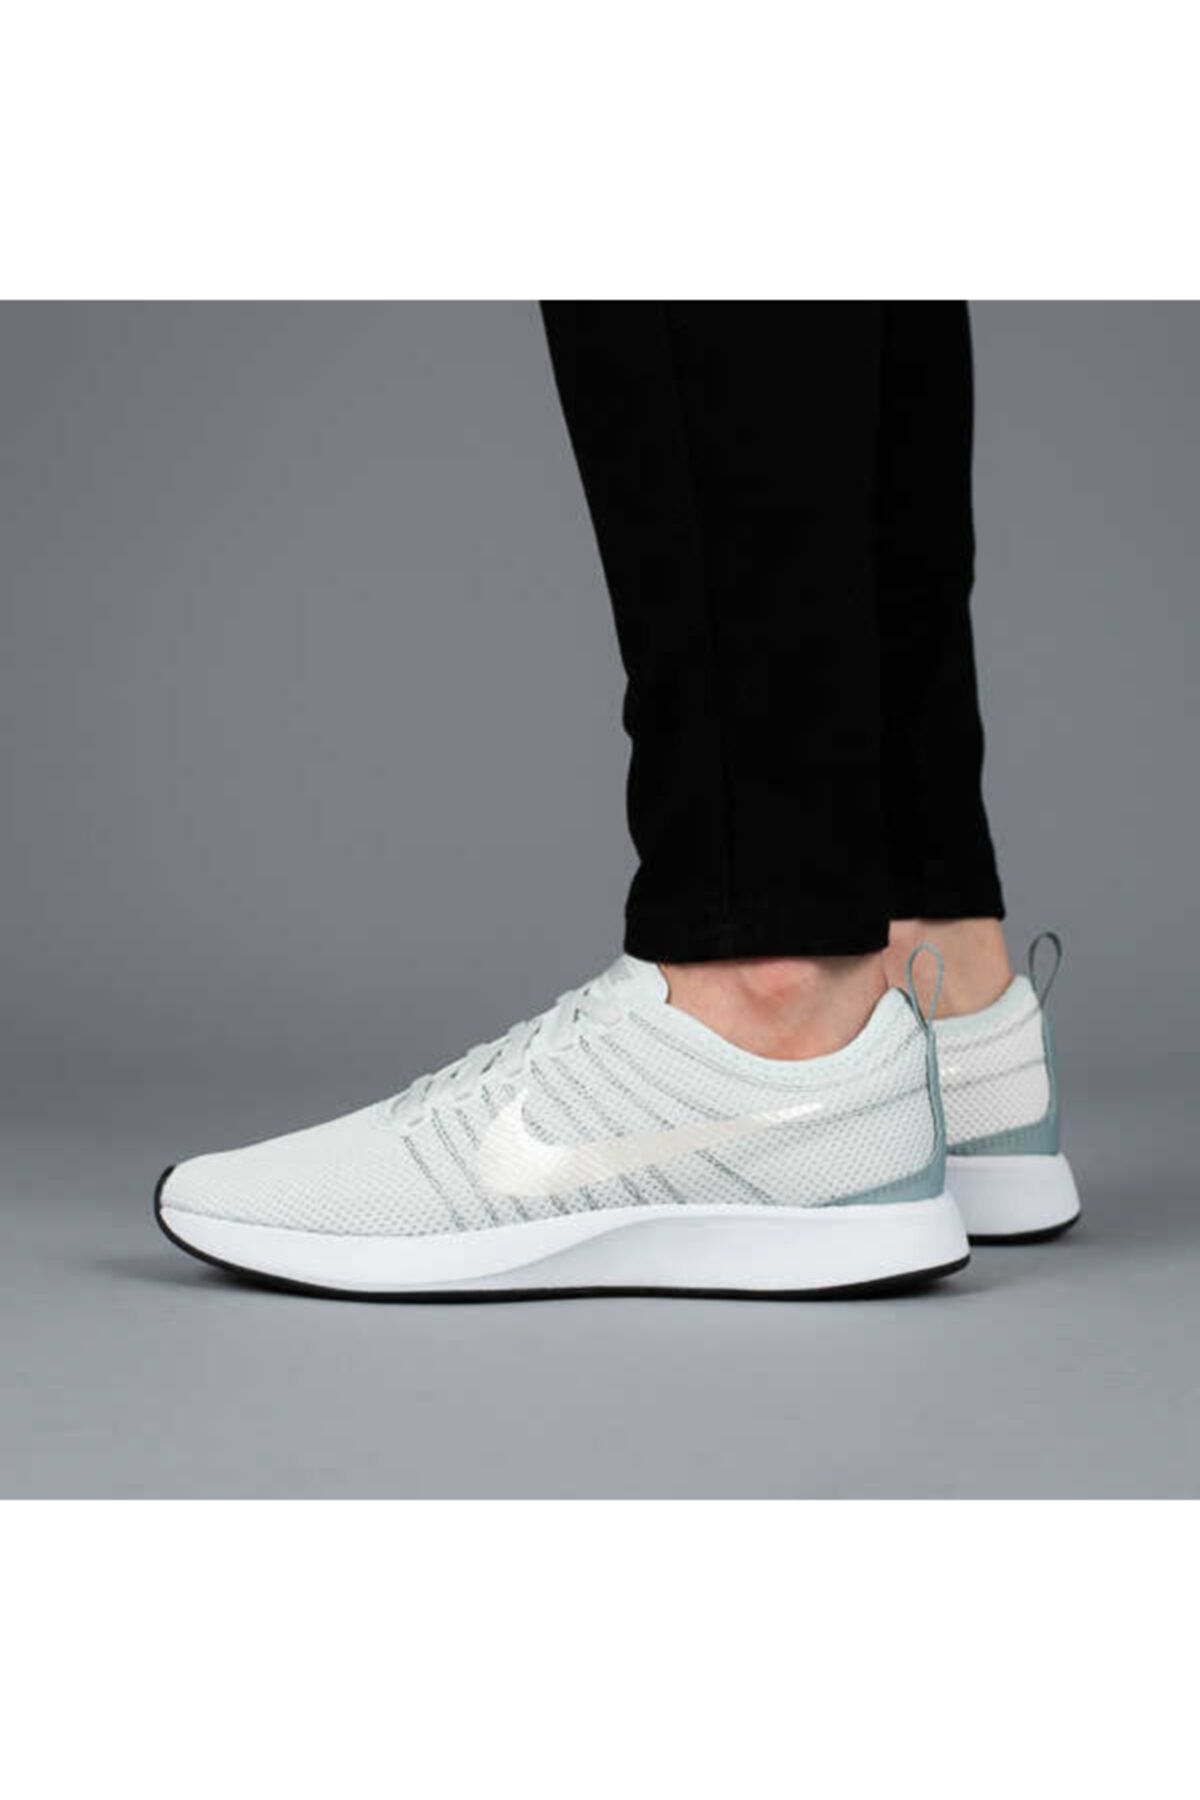 Nike Unisex Turkuaz  Yürüyüş Ayakkabısı